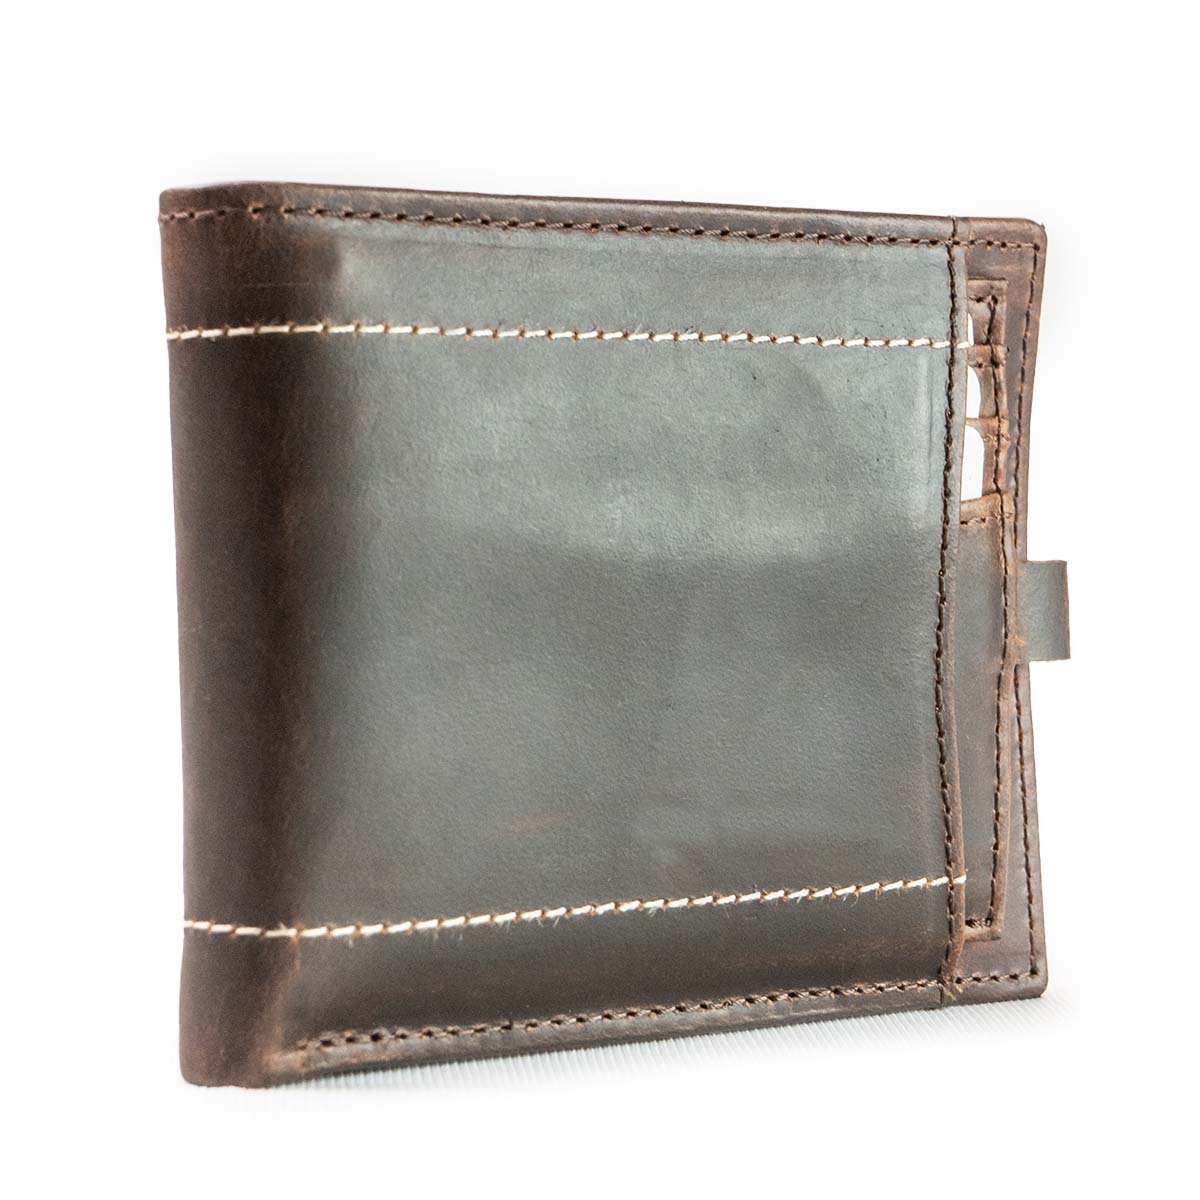   wallet for men, leather wallet, best wallets for men, purse for men